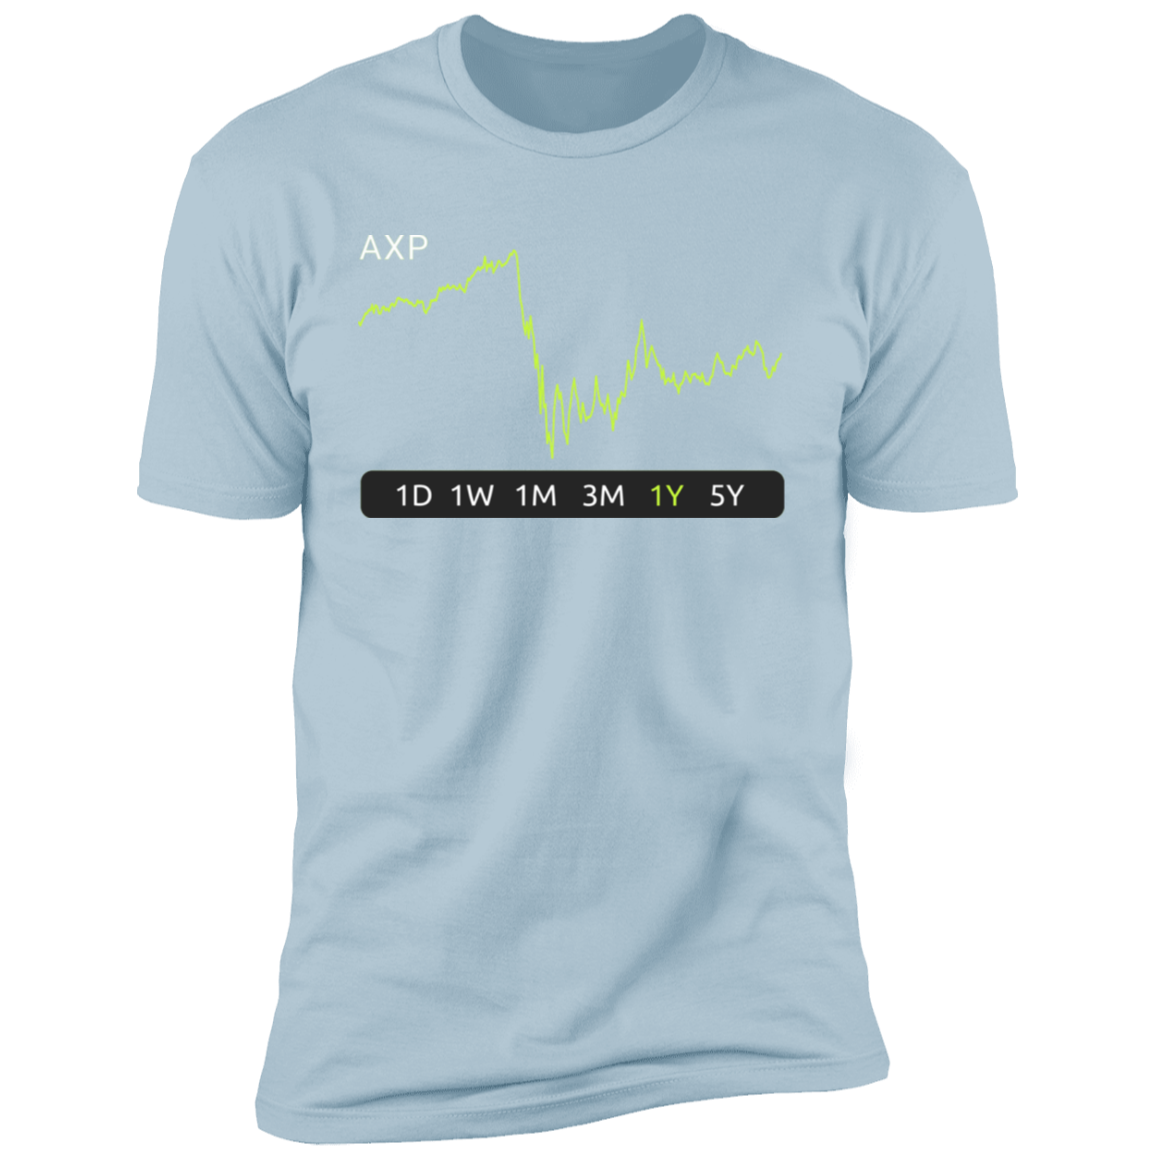 AXP Stock 1y Premium T-Shirt